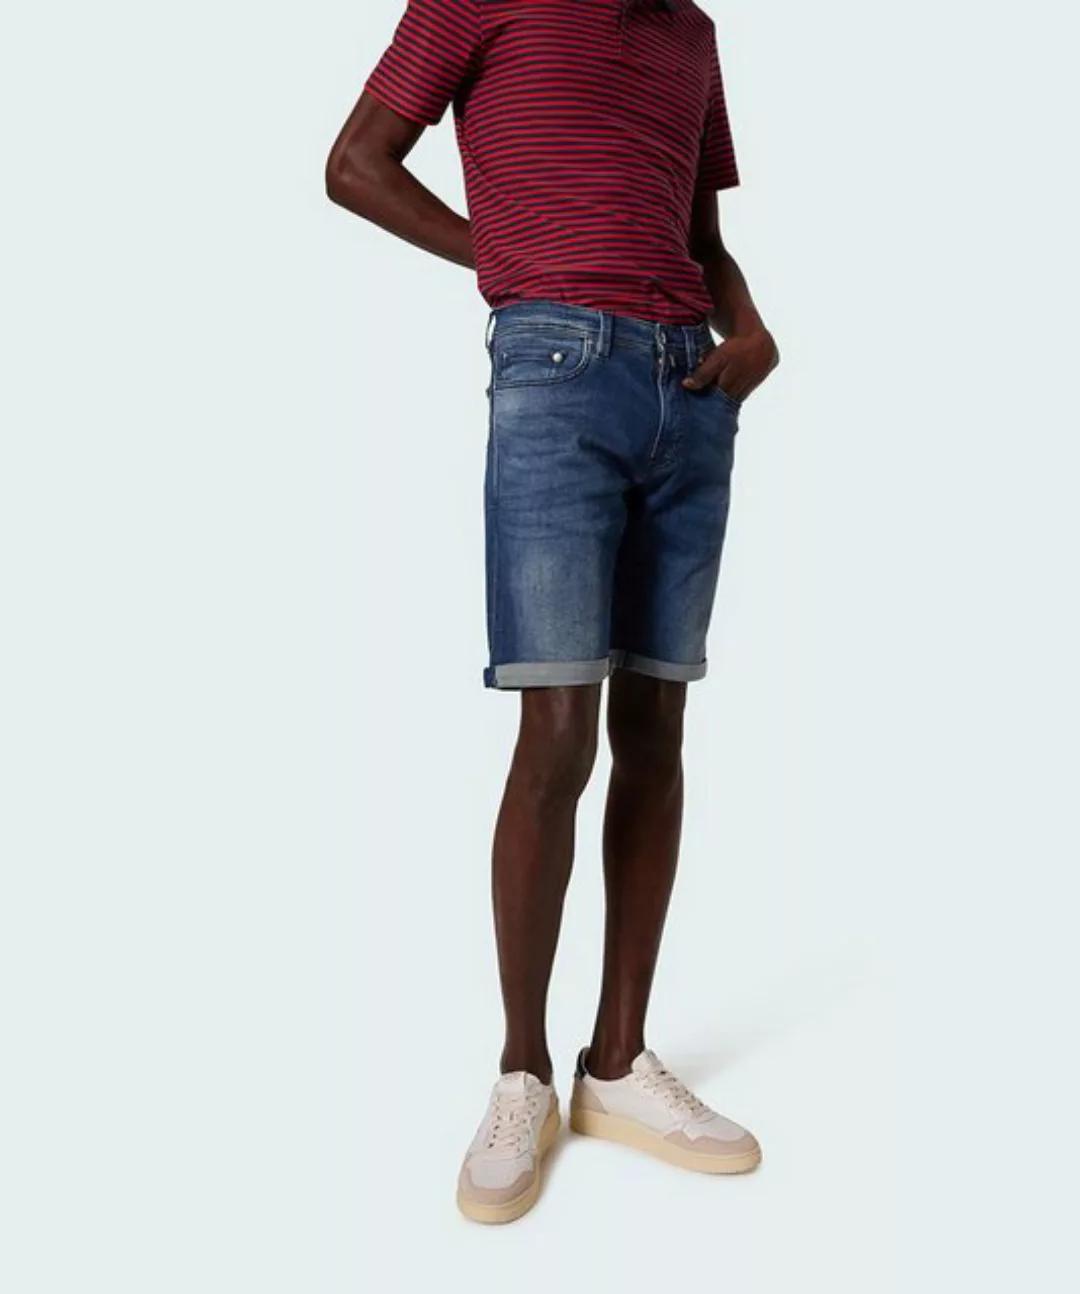 Pierre Cardin Bermudas Pierre Cardin Jeans Bermuda Shorts 32 (1-tlg) günstig online kaufen